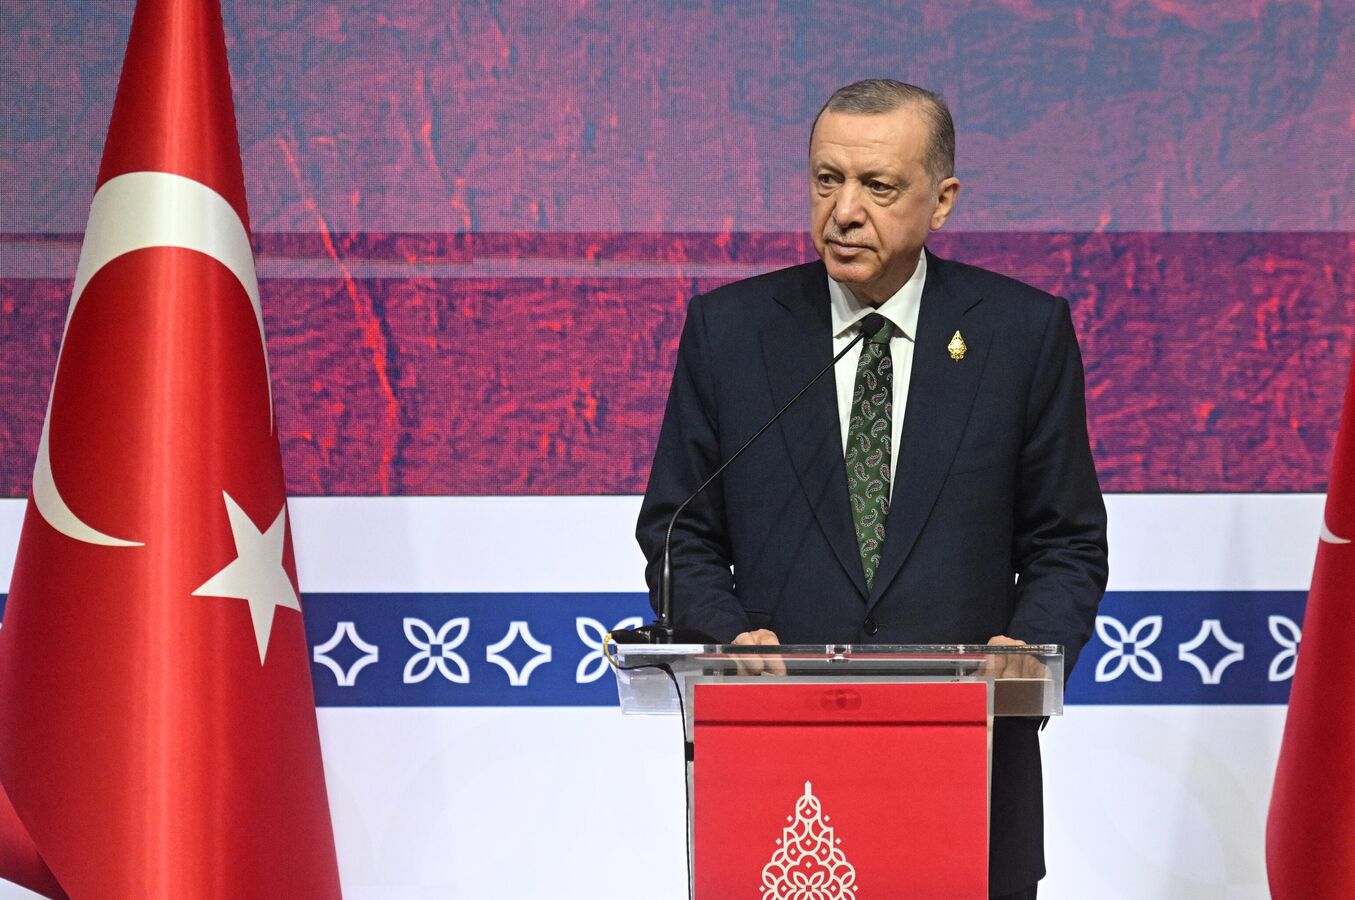 Tổng thống Recep Tayyip Erdogan trong hội nghị thượng đỉnh G20 tại Bali. Ảnh: Sputnik